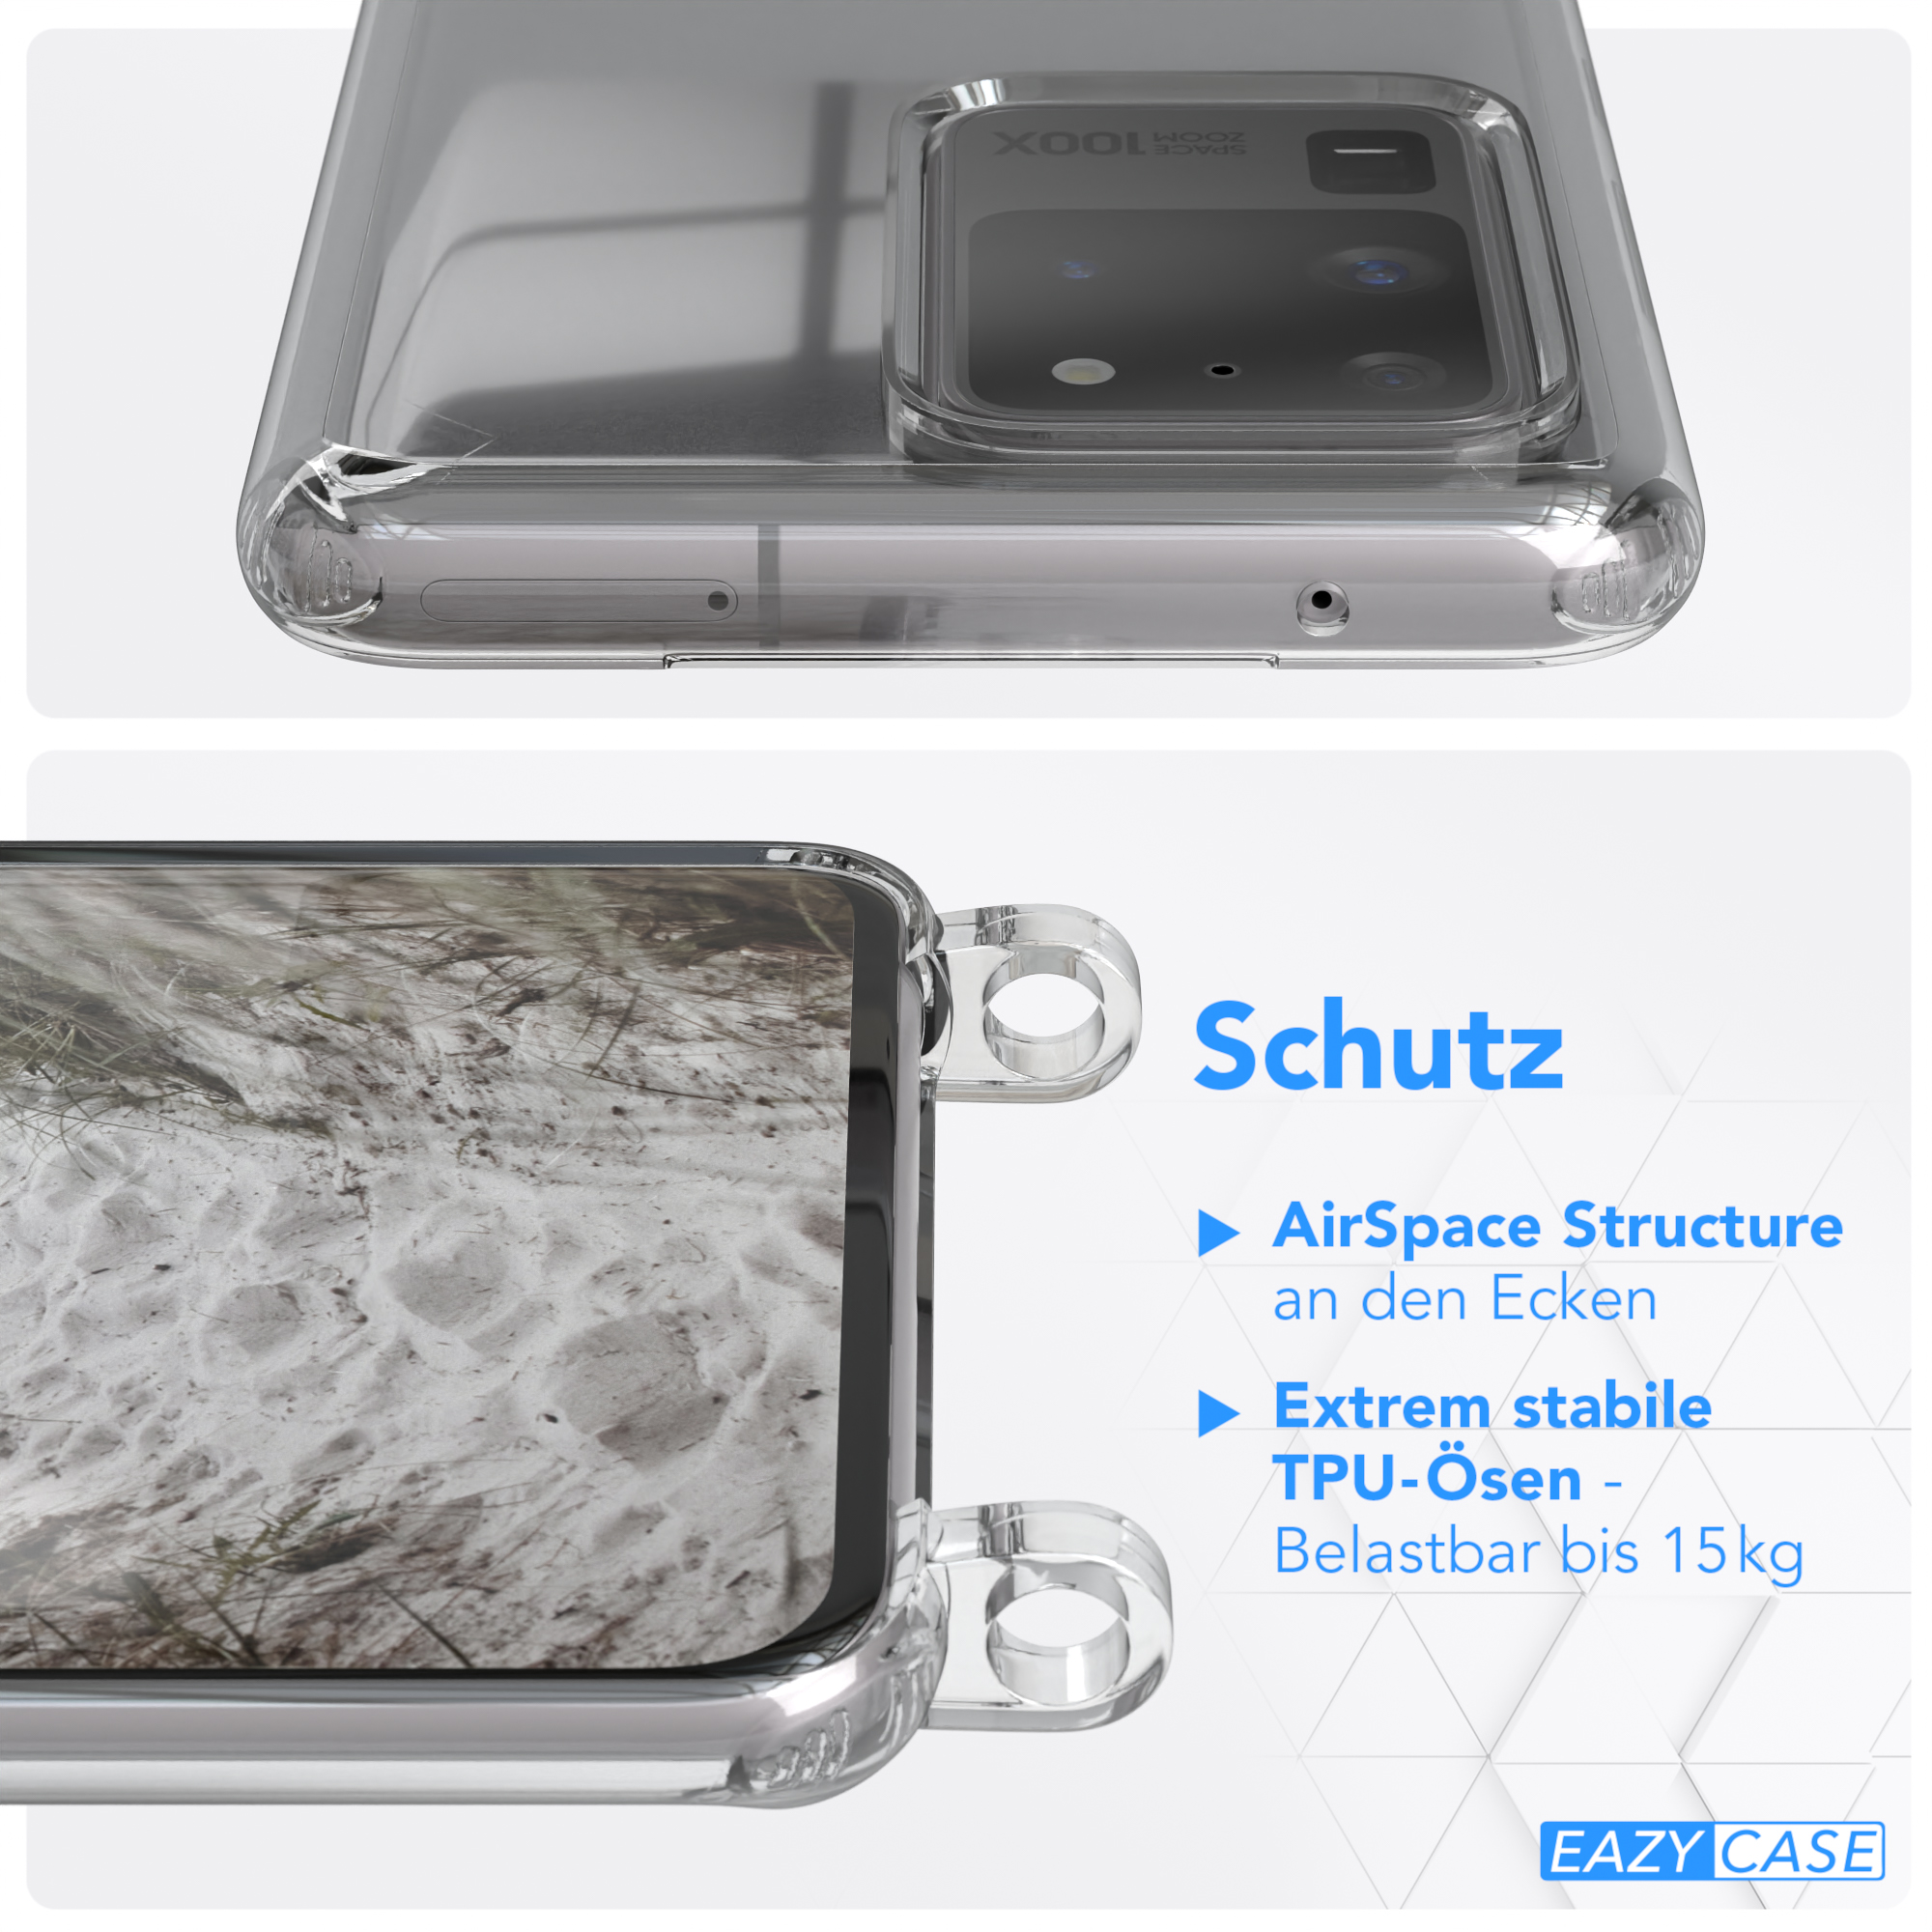 CASE runder Grau Handyhülle mit Ultra Ultra S20 Beige EAZY Galaxy 5G, S20 Taupe / Umhängetasche, Samsung, Transparente Kette / unifarbend,